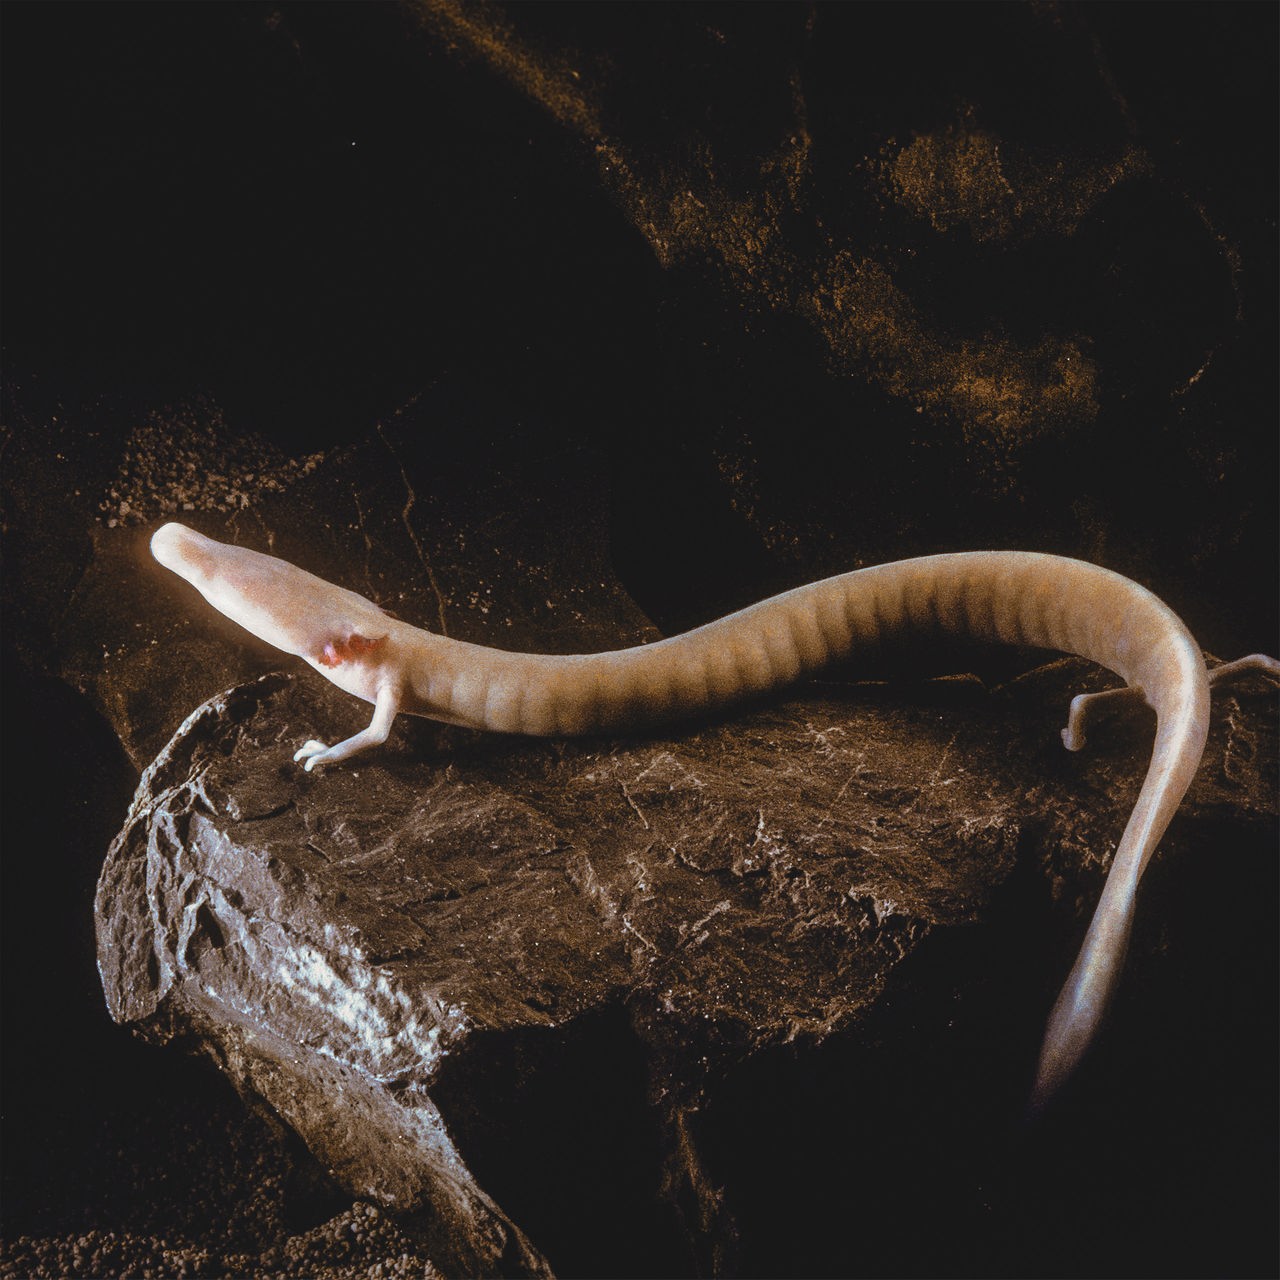 Ein länglicher Grottenolm mit heller Haut, der an einen Salamander erinnert, sitzt auf einem braunen Stein.